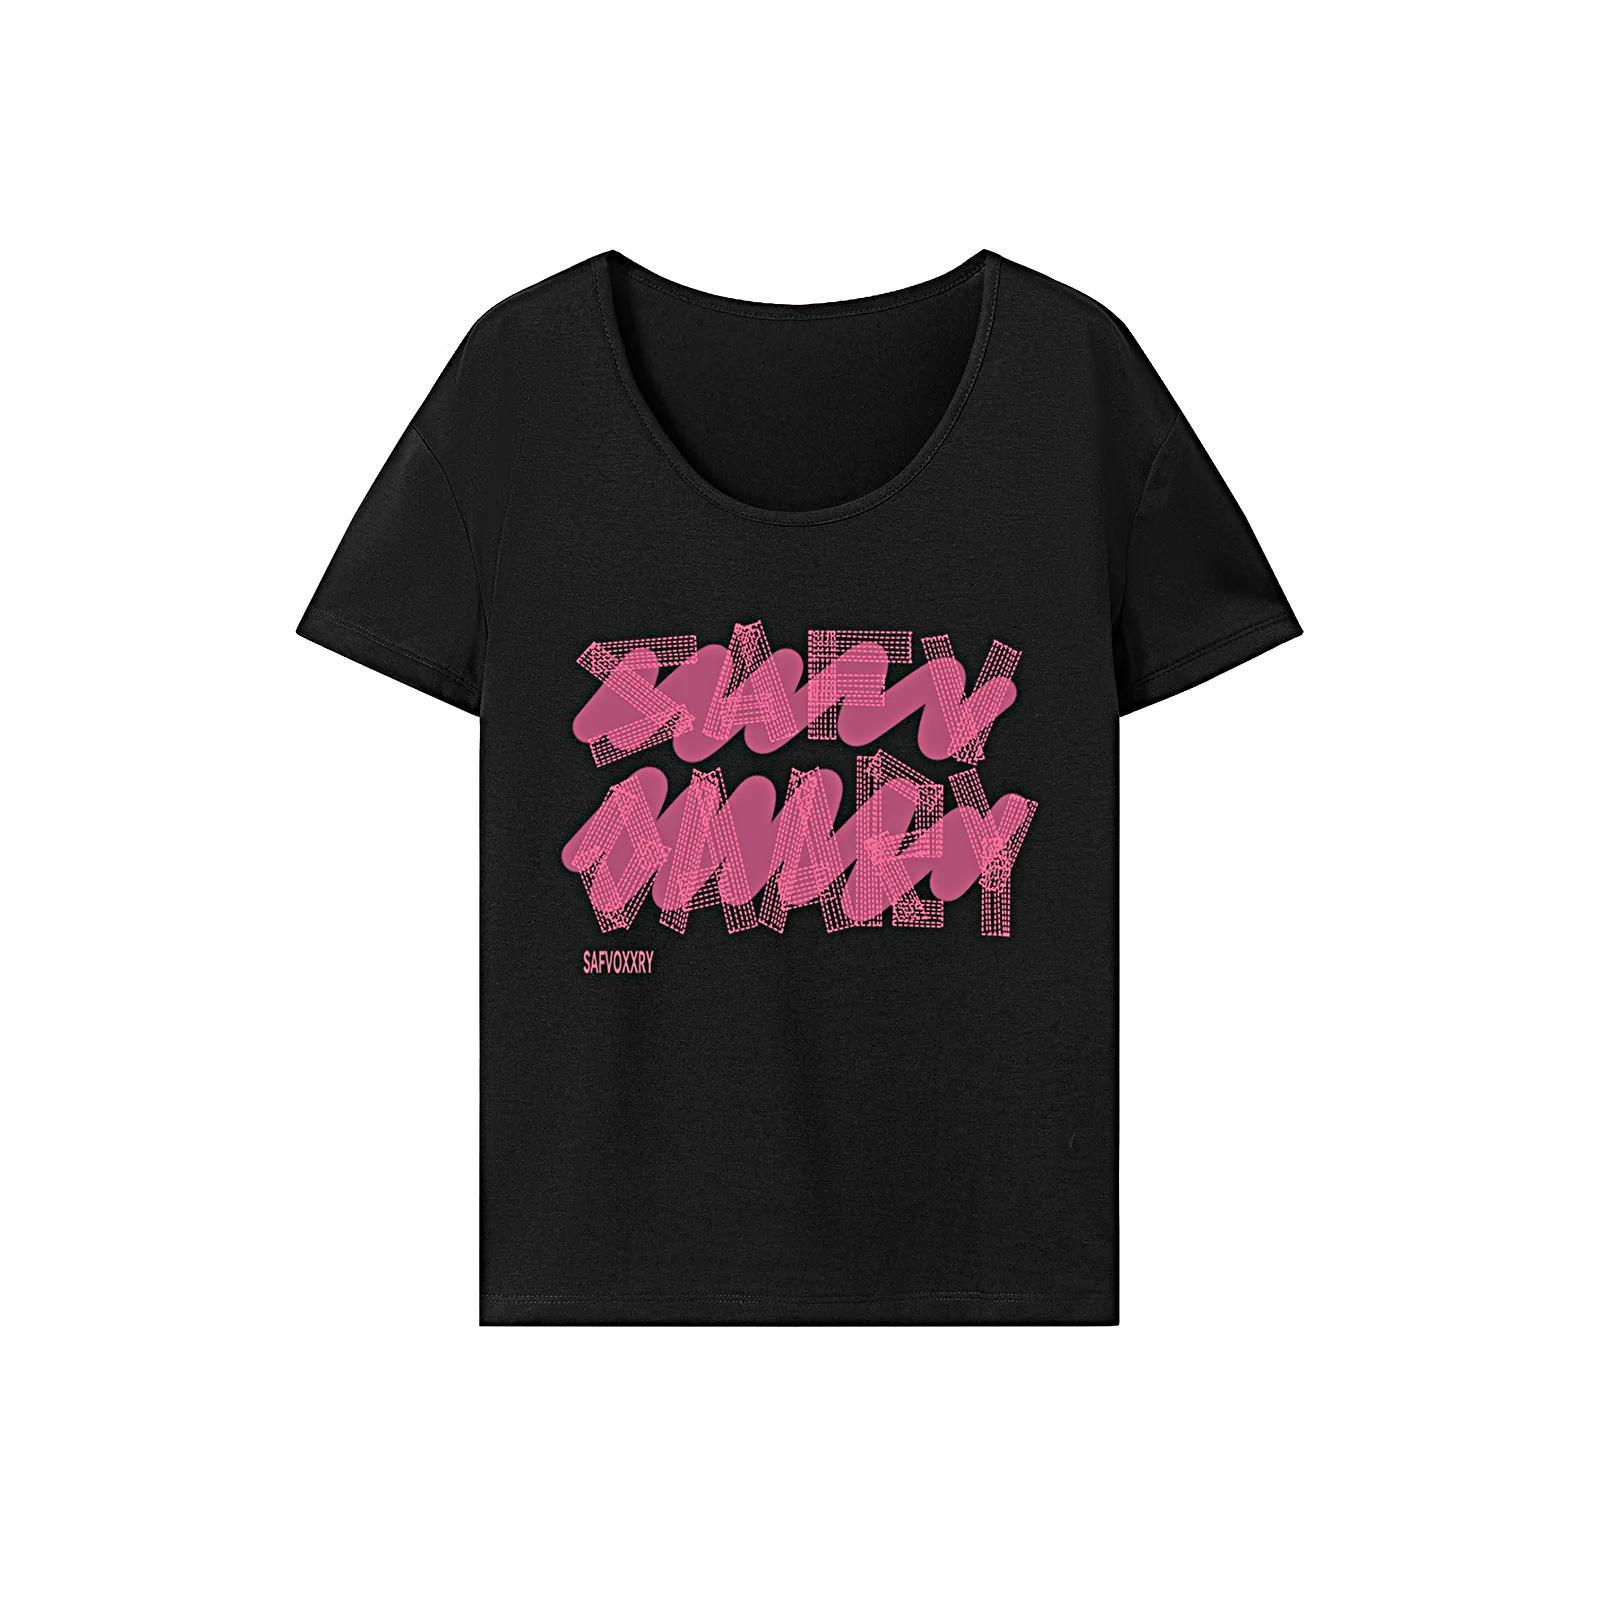 T Shirt for Women Summer Lightweight Crew Neck Tee for Walking Shopping Work M